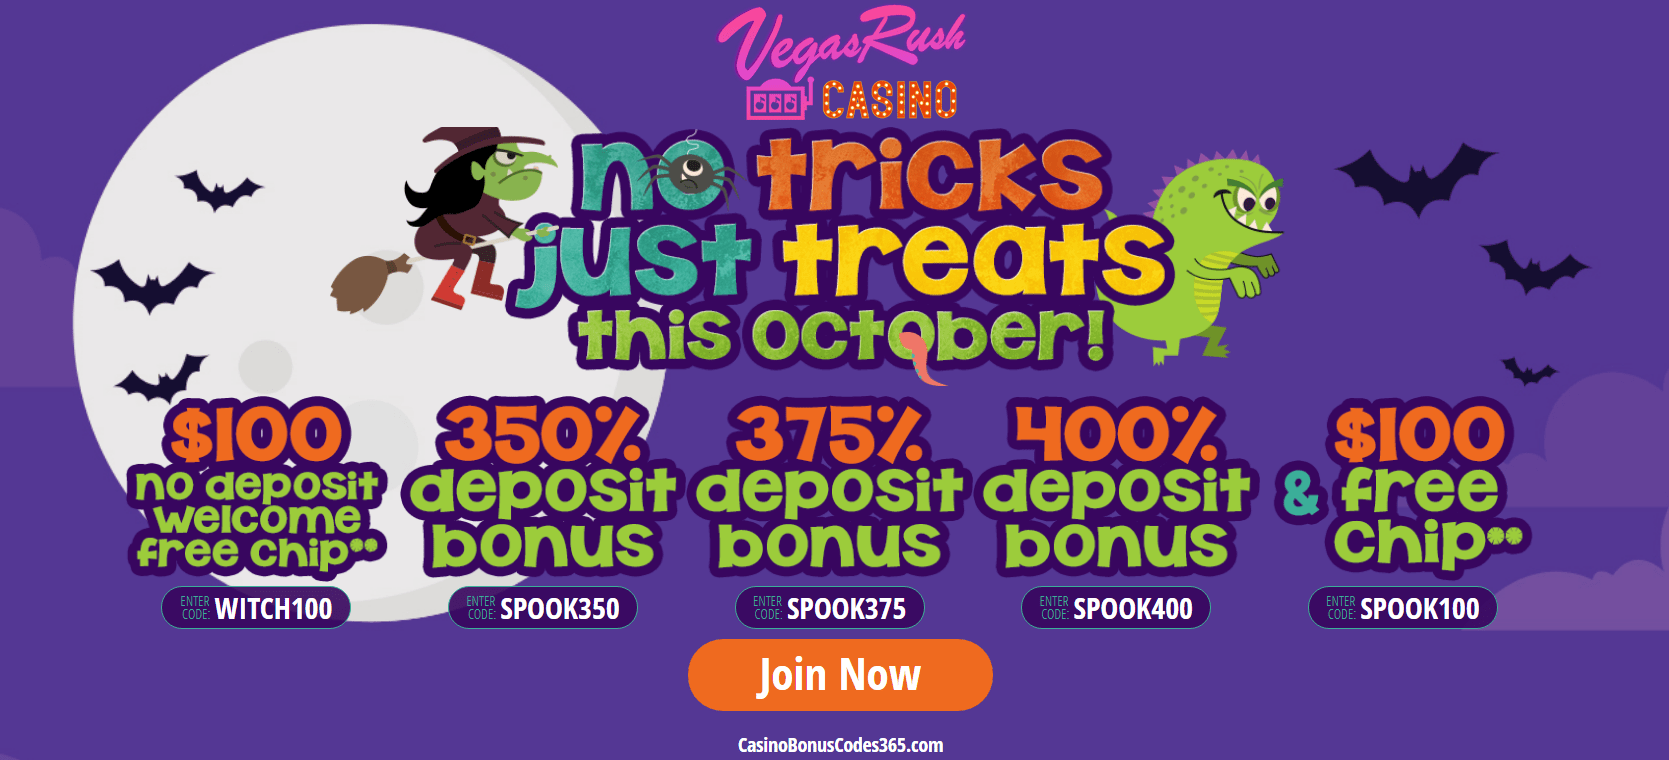  no deposit online casino bonus codes 2019 